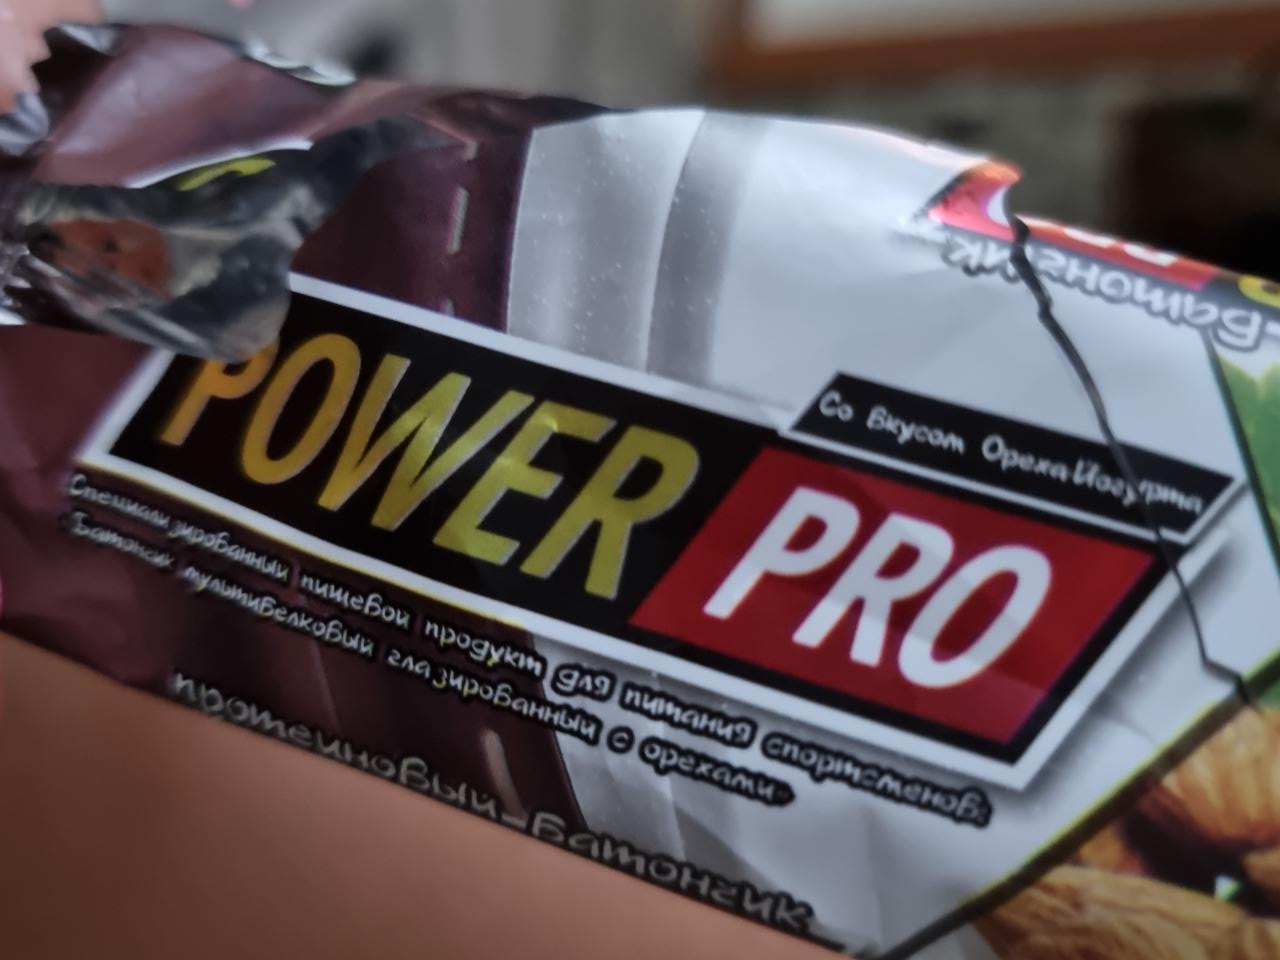 Фото - протеиновый батончик с концентрацией белка 36% и йогуртно-ореховой начинкой Power Pro